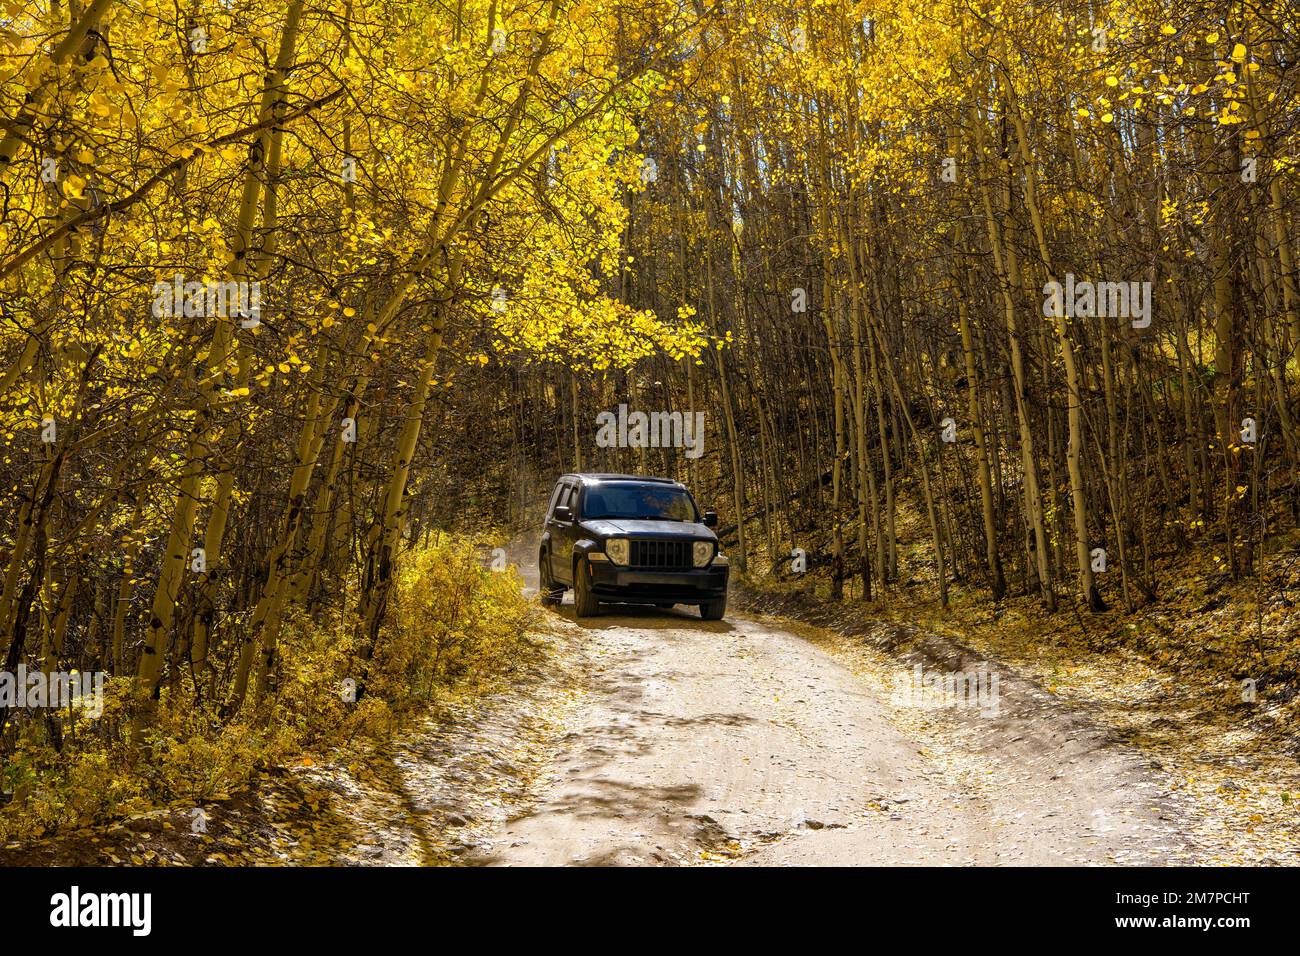 Autunno Aspen Grove - Un SUV Jeep che guida su una strada sterrata backcountry in un denso bosco di aspen dorati in un soleggiato pomeriggio d'autunno. Leadville, Colorado, Stati Uniti. Foto Stock